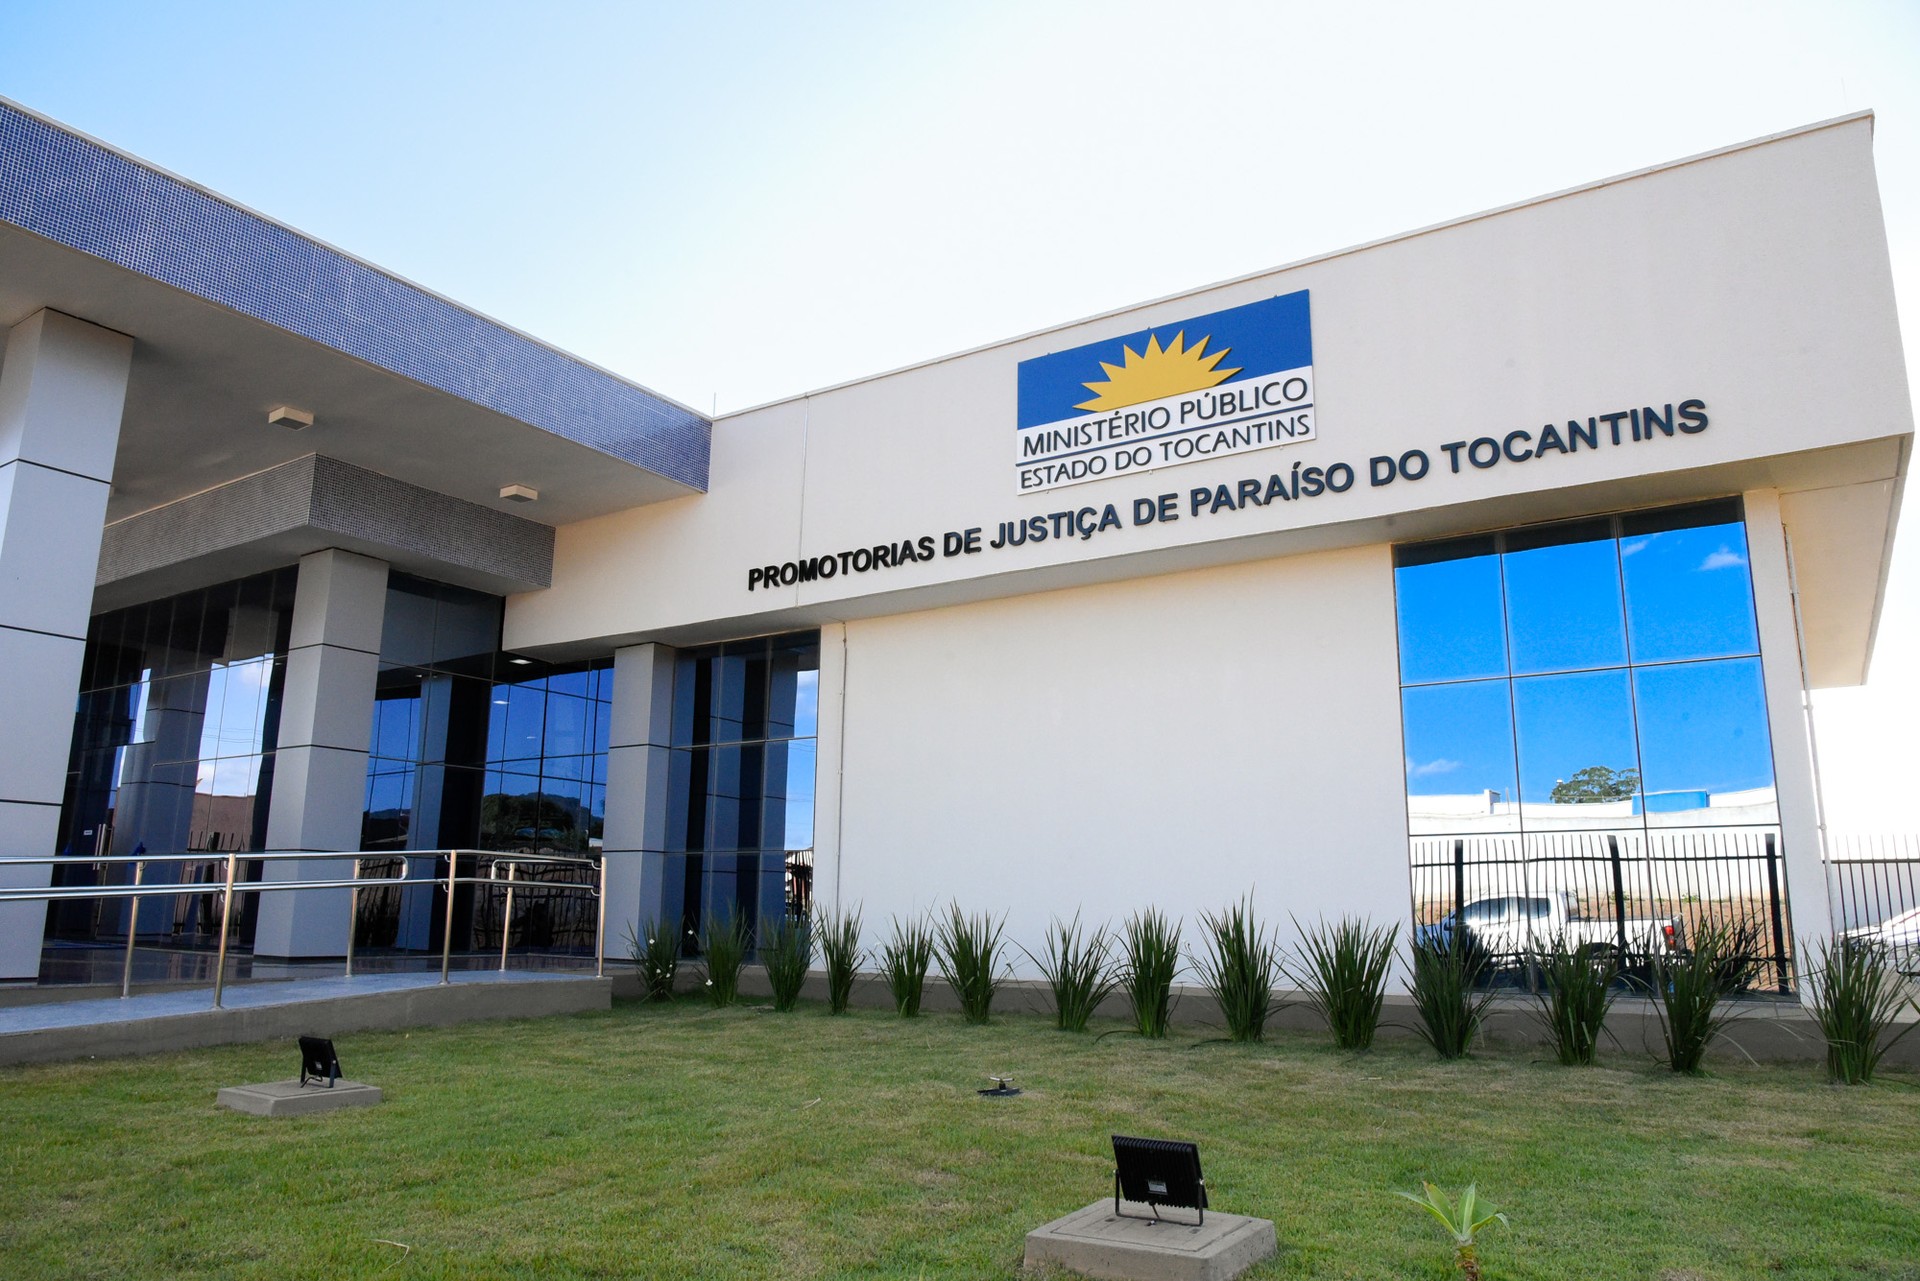 Nova sede das Promotorias de Justiça de Paraíso do Tocantins